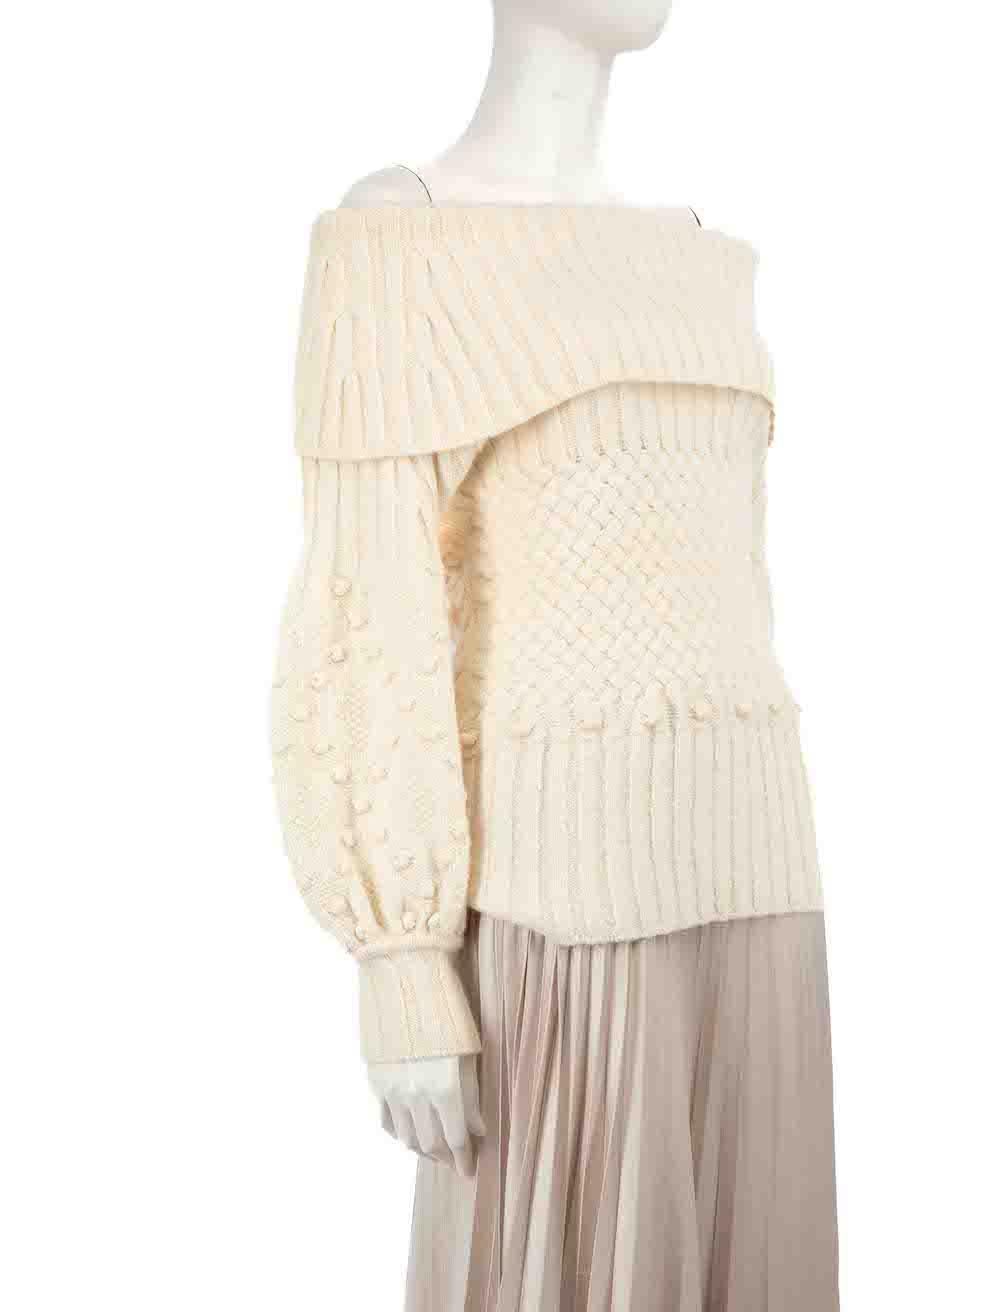 CONDIT ist sehr gut. Kaum sichtbare Abnutzungserscheinungen am Pullover sind an diesem gebrauchten Oscar de la Renta Designer-Wiederverkaufsartikel zu erkennen.
 
 Einzelheiten
 Ecru
 Wolle
 Kabelstrick-Pullover
 Schulterfrei
 Lange Ärmel
 
 
